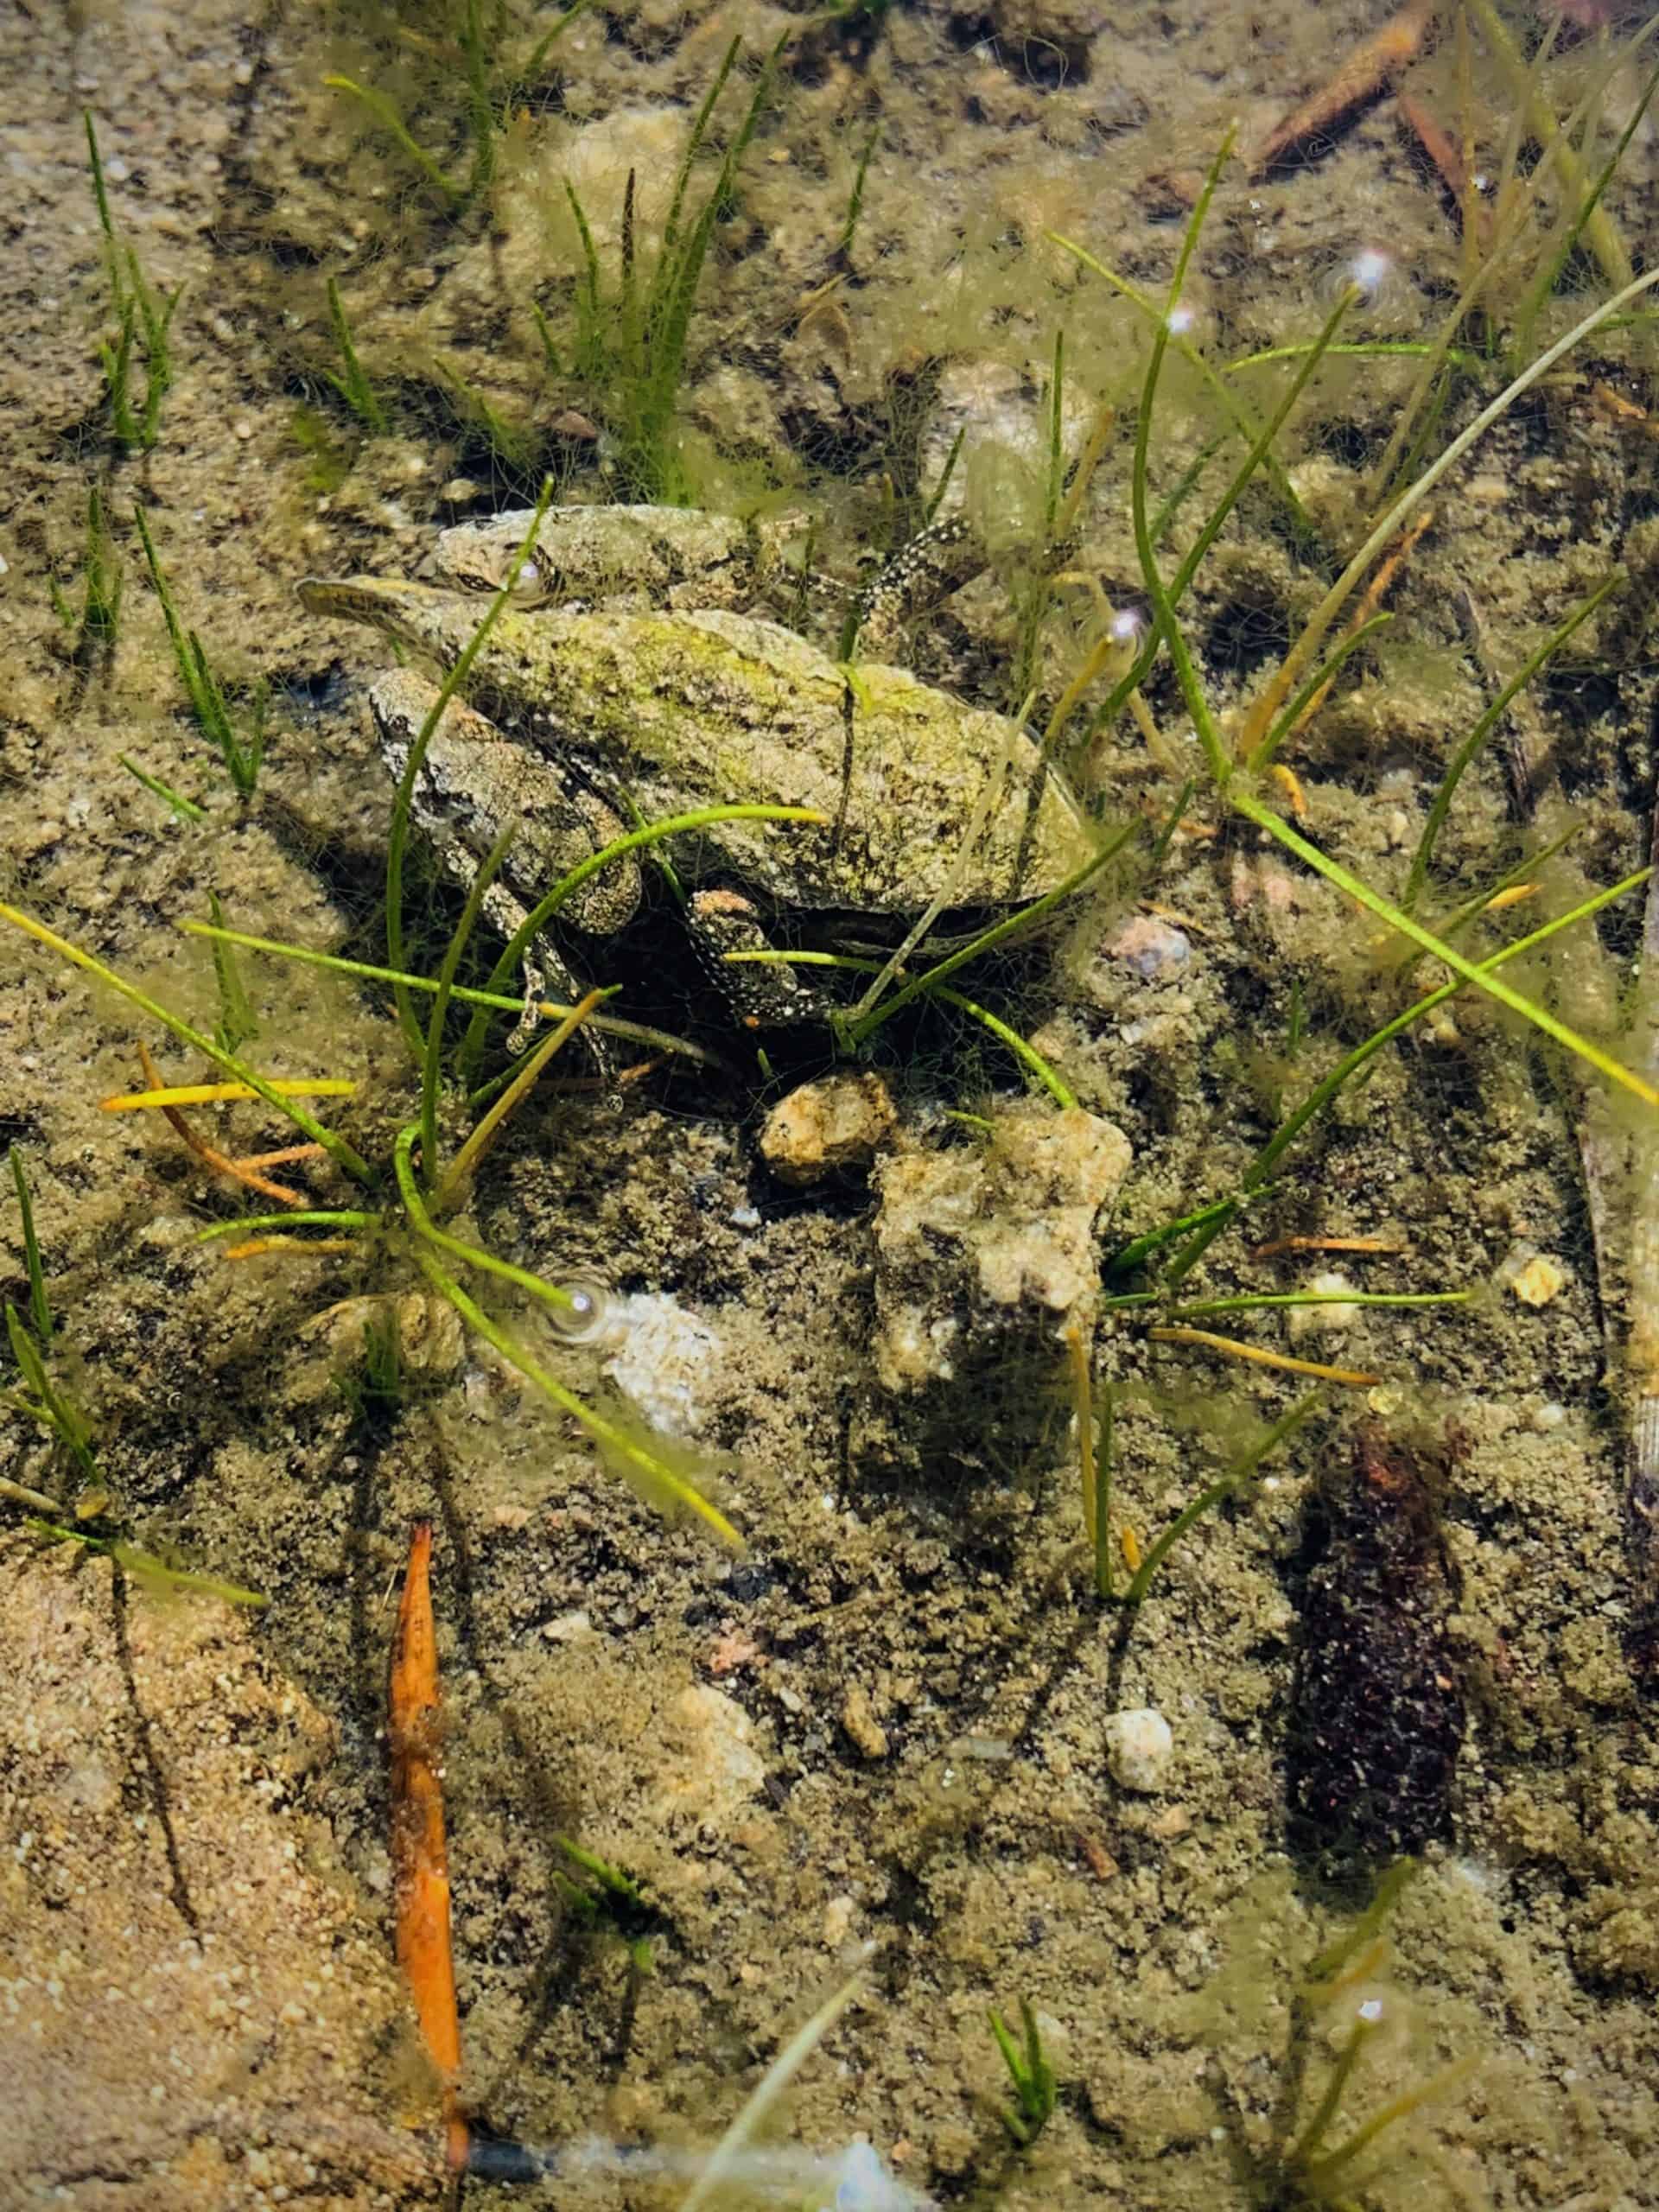 Tailed frog, Bench Lake